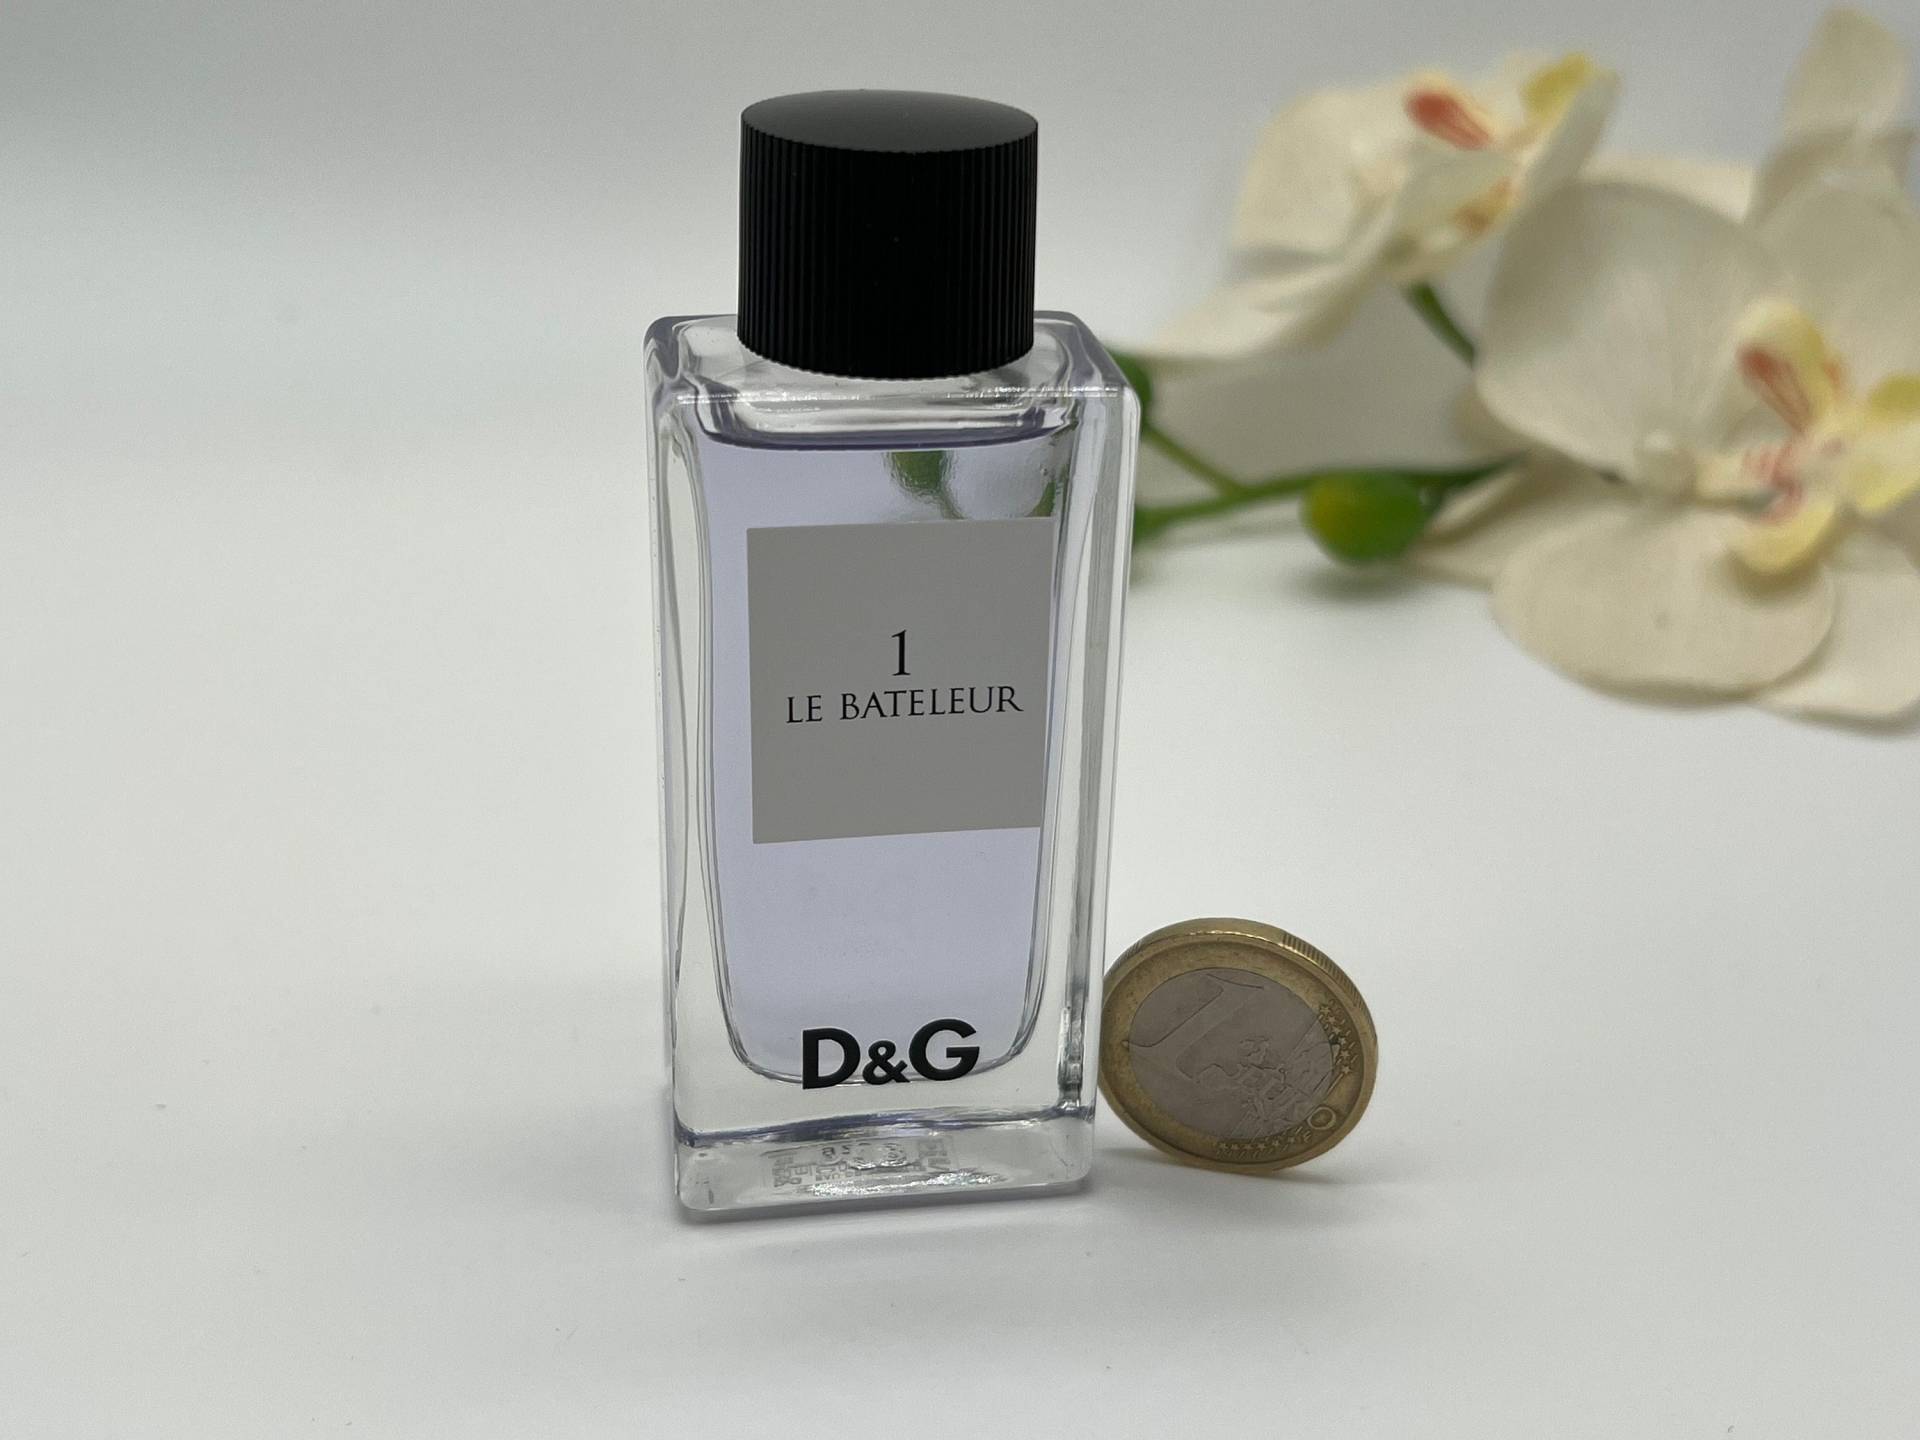 Miniatur Le Bateleur 1 Dolce Gabbana 20 Ml/0, 70 Fl.oz Eau De Toilette Splash No Box Rare Women Es Fragrance Travel Size von Etsy - VintageItalienstyle